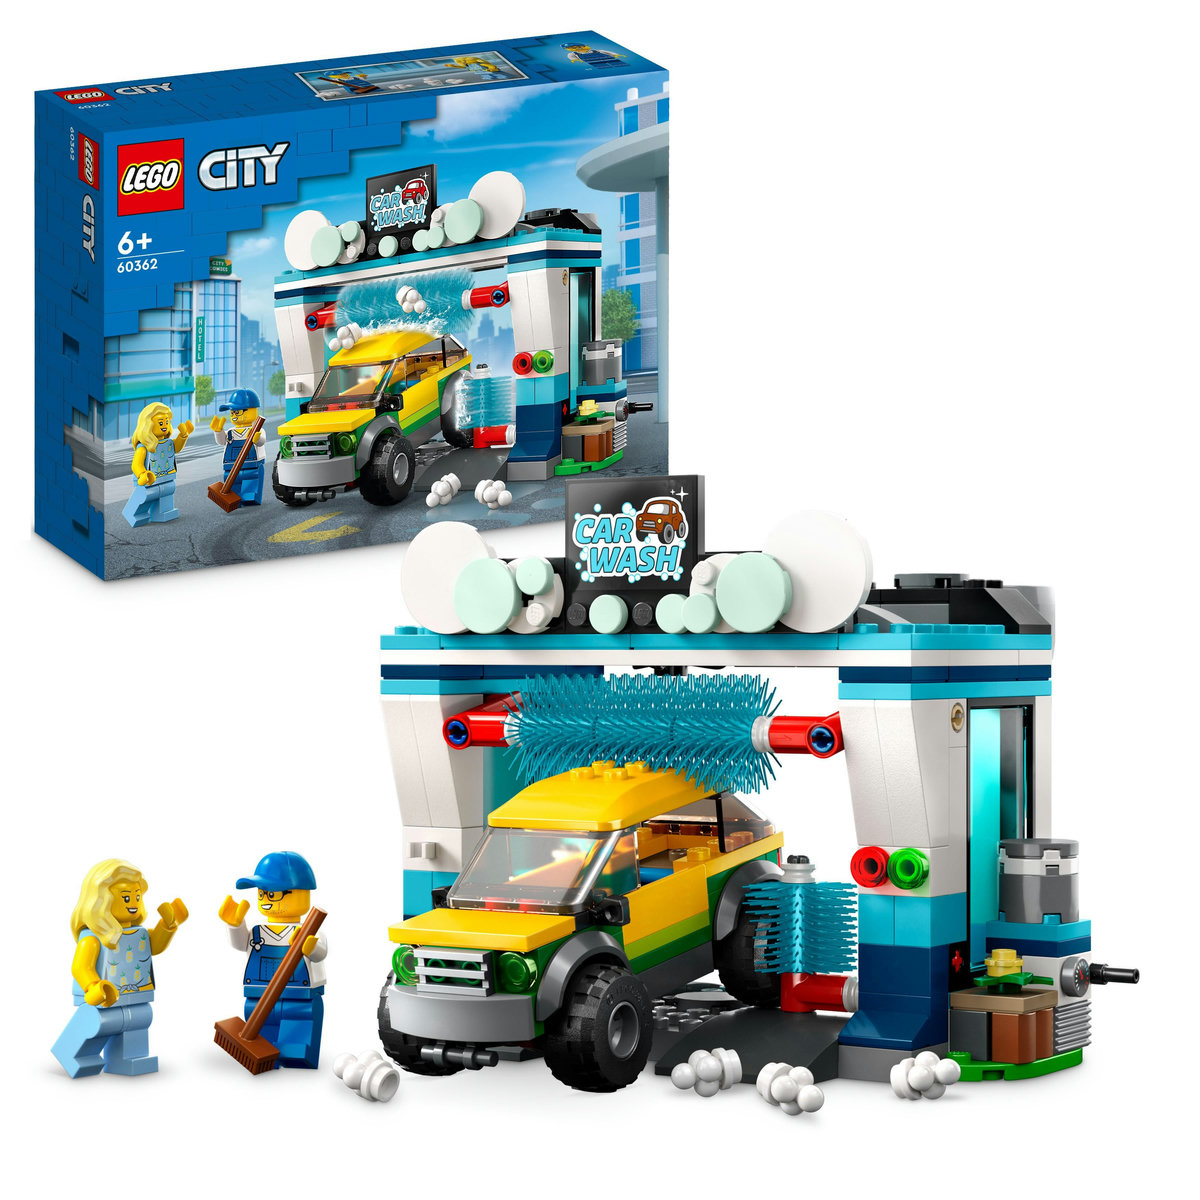 LEGO City - Spalatorie de masini 60362, 243 piese